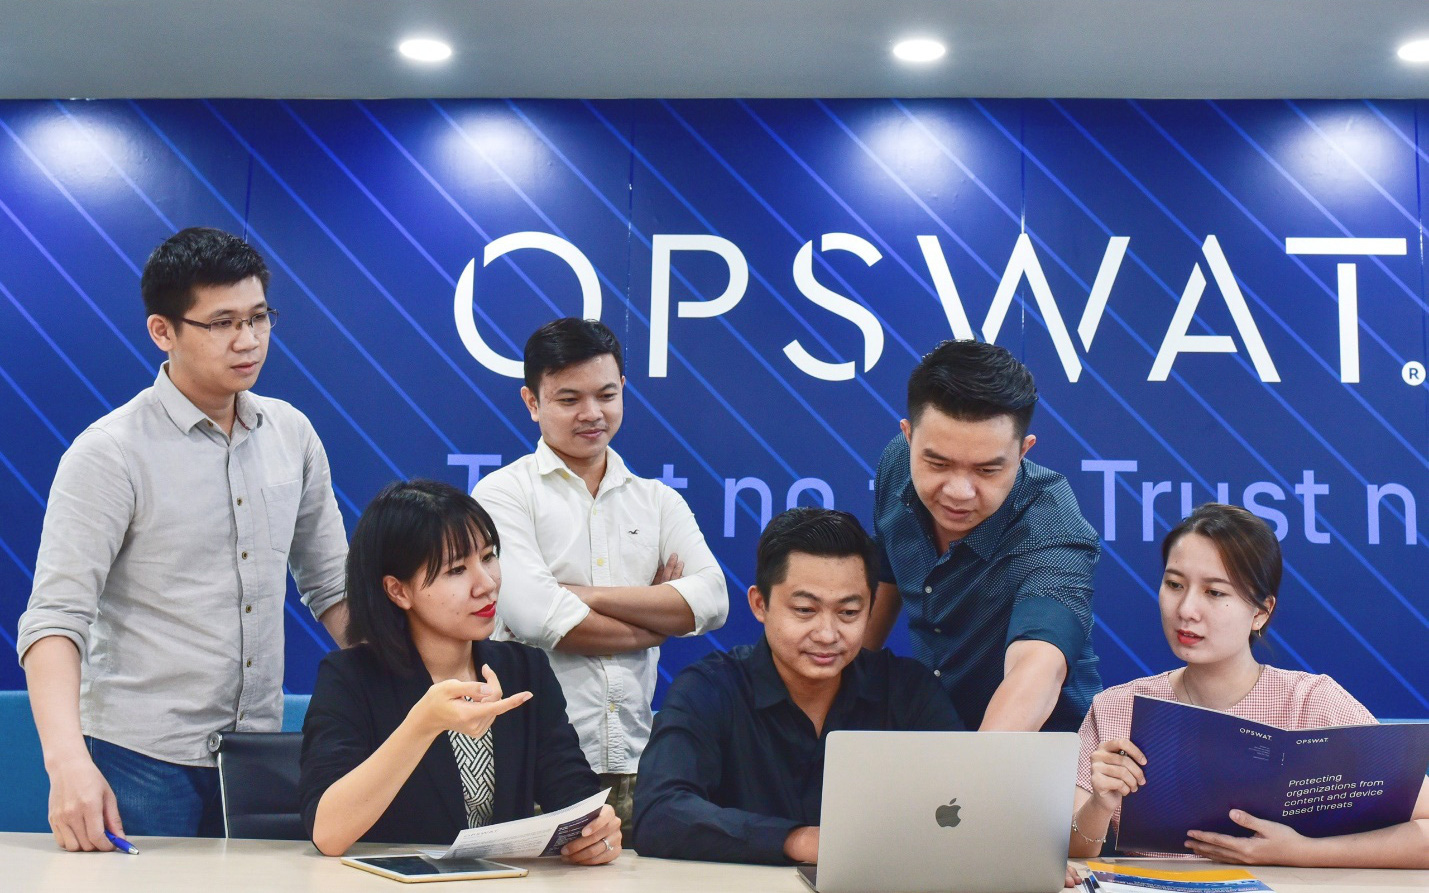 HR Asia vinh danh OPSWAT Vietnam “Nơi làm việc tốt nhất châu Á năm 2021”